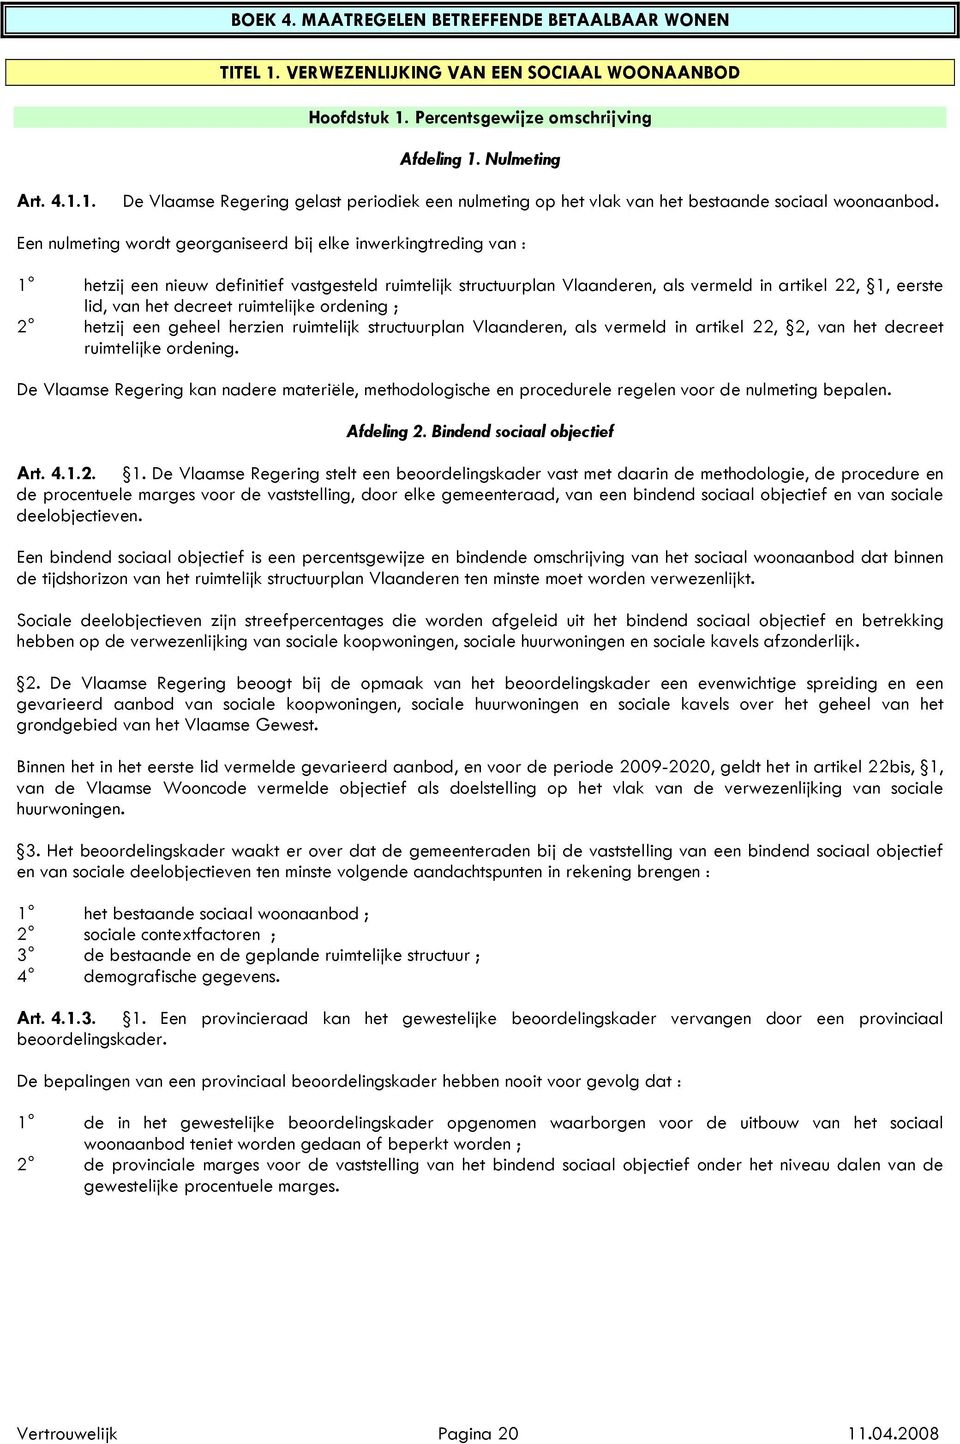 decreet ruimtelijke ordening ; 2 hetzij een geheel herzien ruimtelijk structuurplan Vlaanderen, als vermeld in artikel 22, 2, van het decreet ruimtelijke ordening.